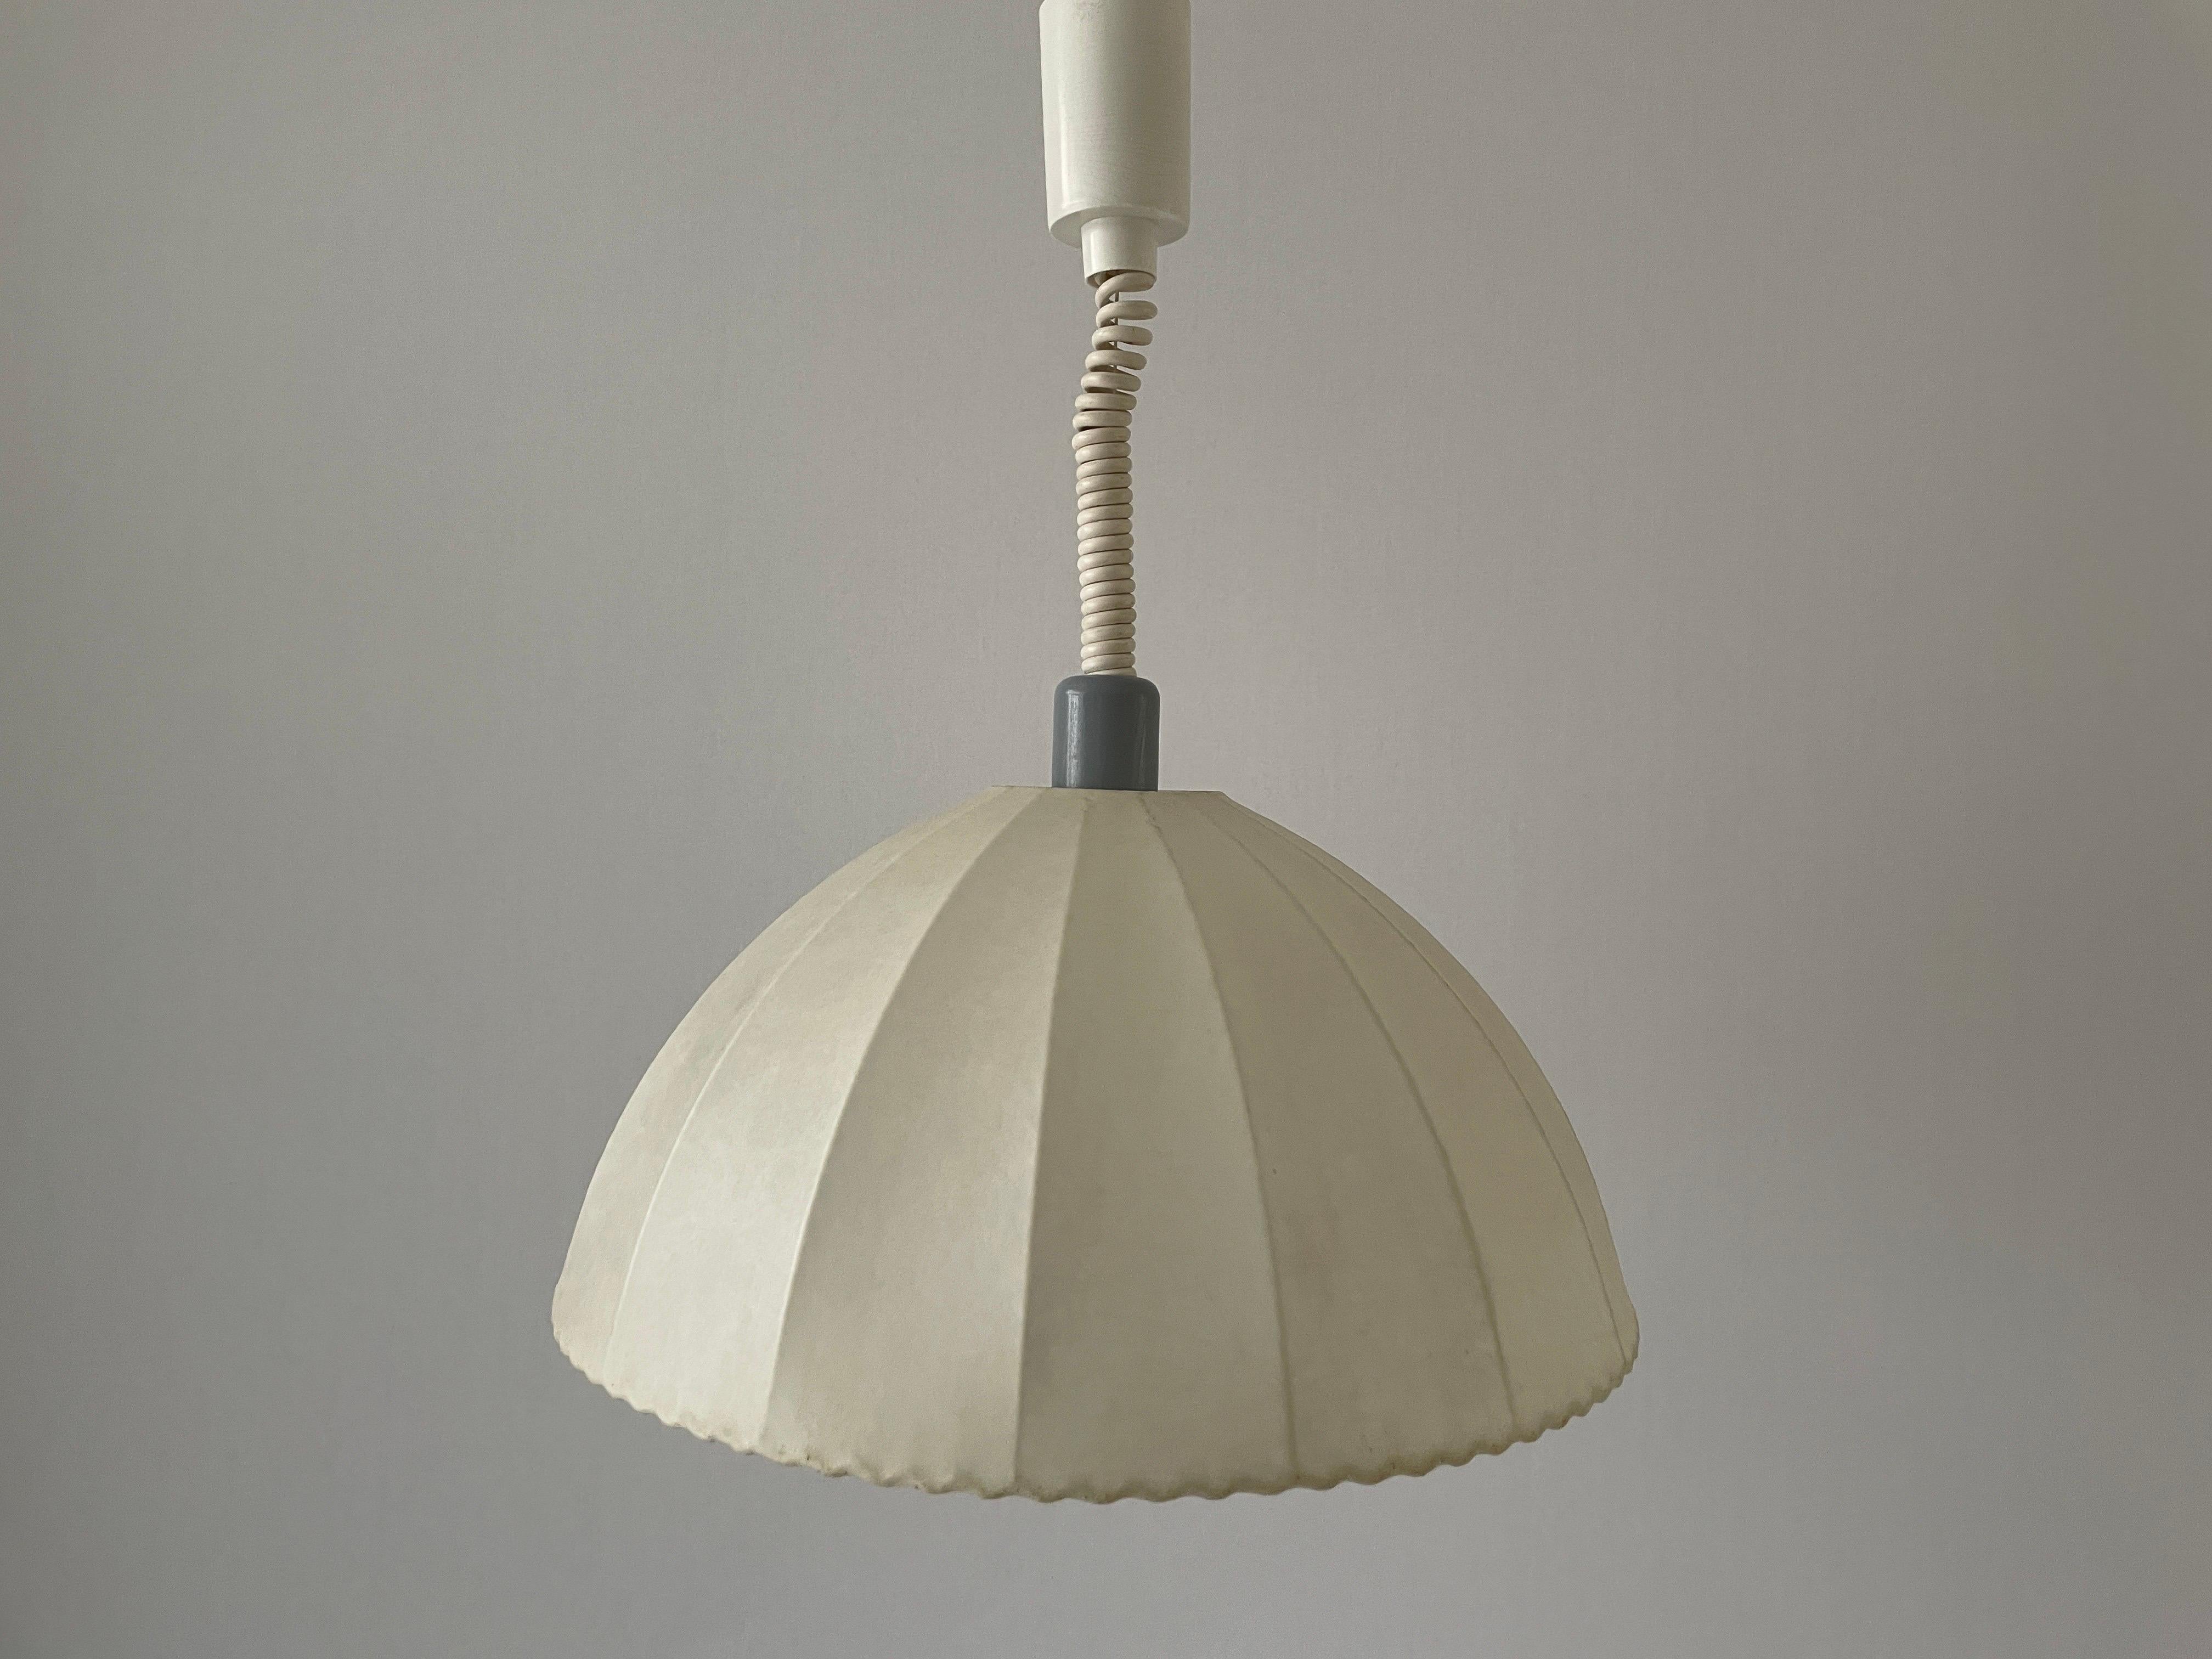 Lampe suspendue Cocoon de Goldkant avec couvercle en métal gris, années 1960, Allemagne

L'abat-jour est en très bon état vintage.

Cette lampe fonctionne avec des ampoules E27. 
Câblé et adapté à une utilisation avec 220V et 110V pour tous les